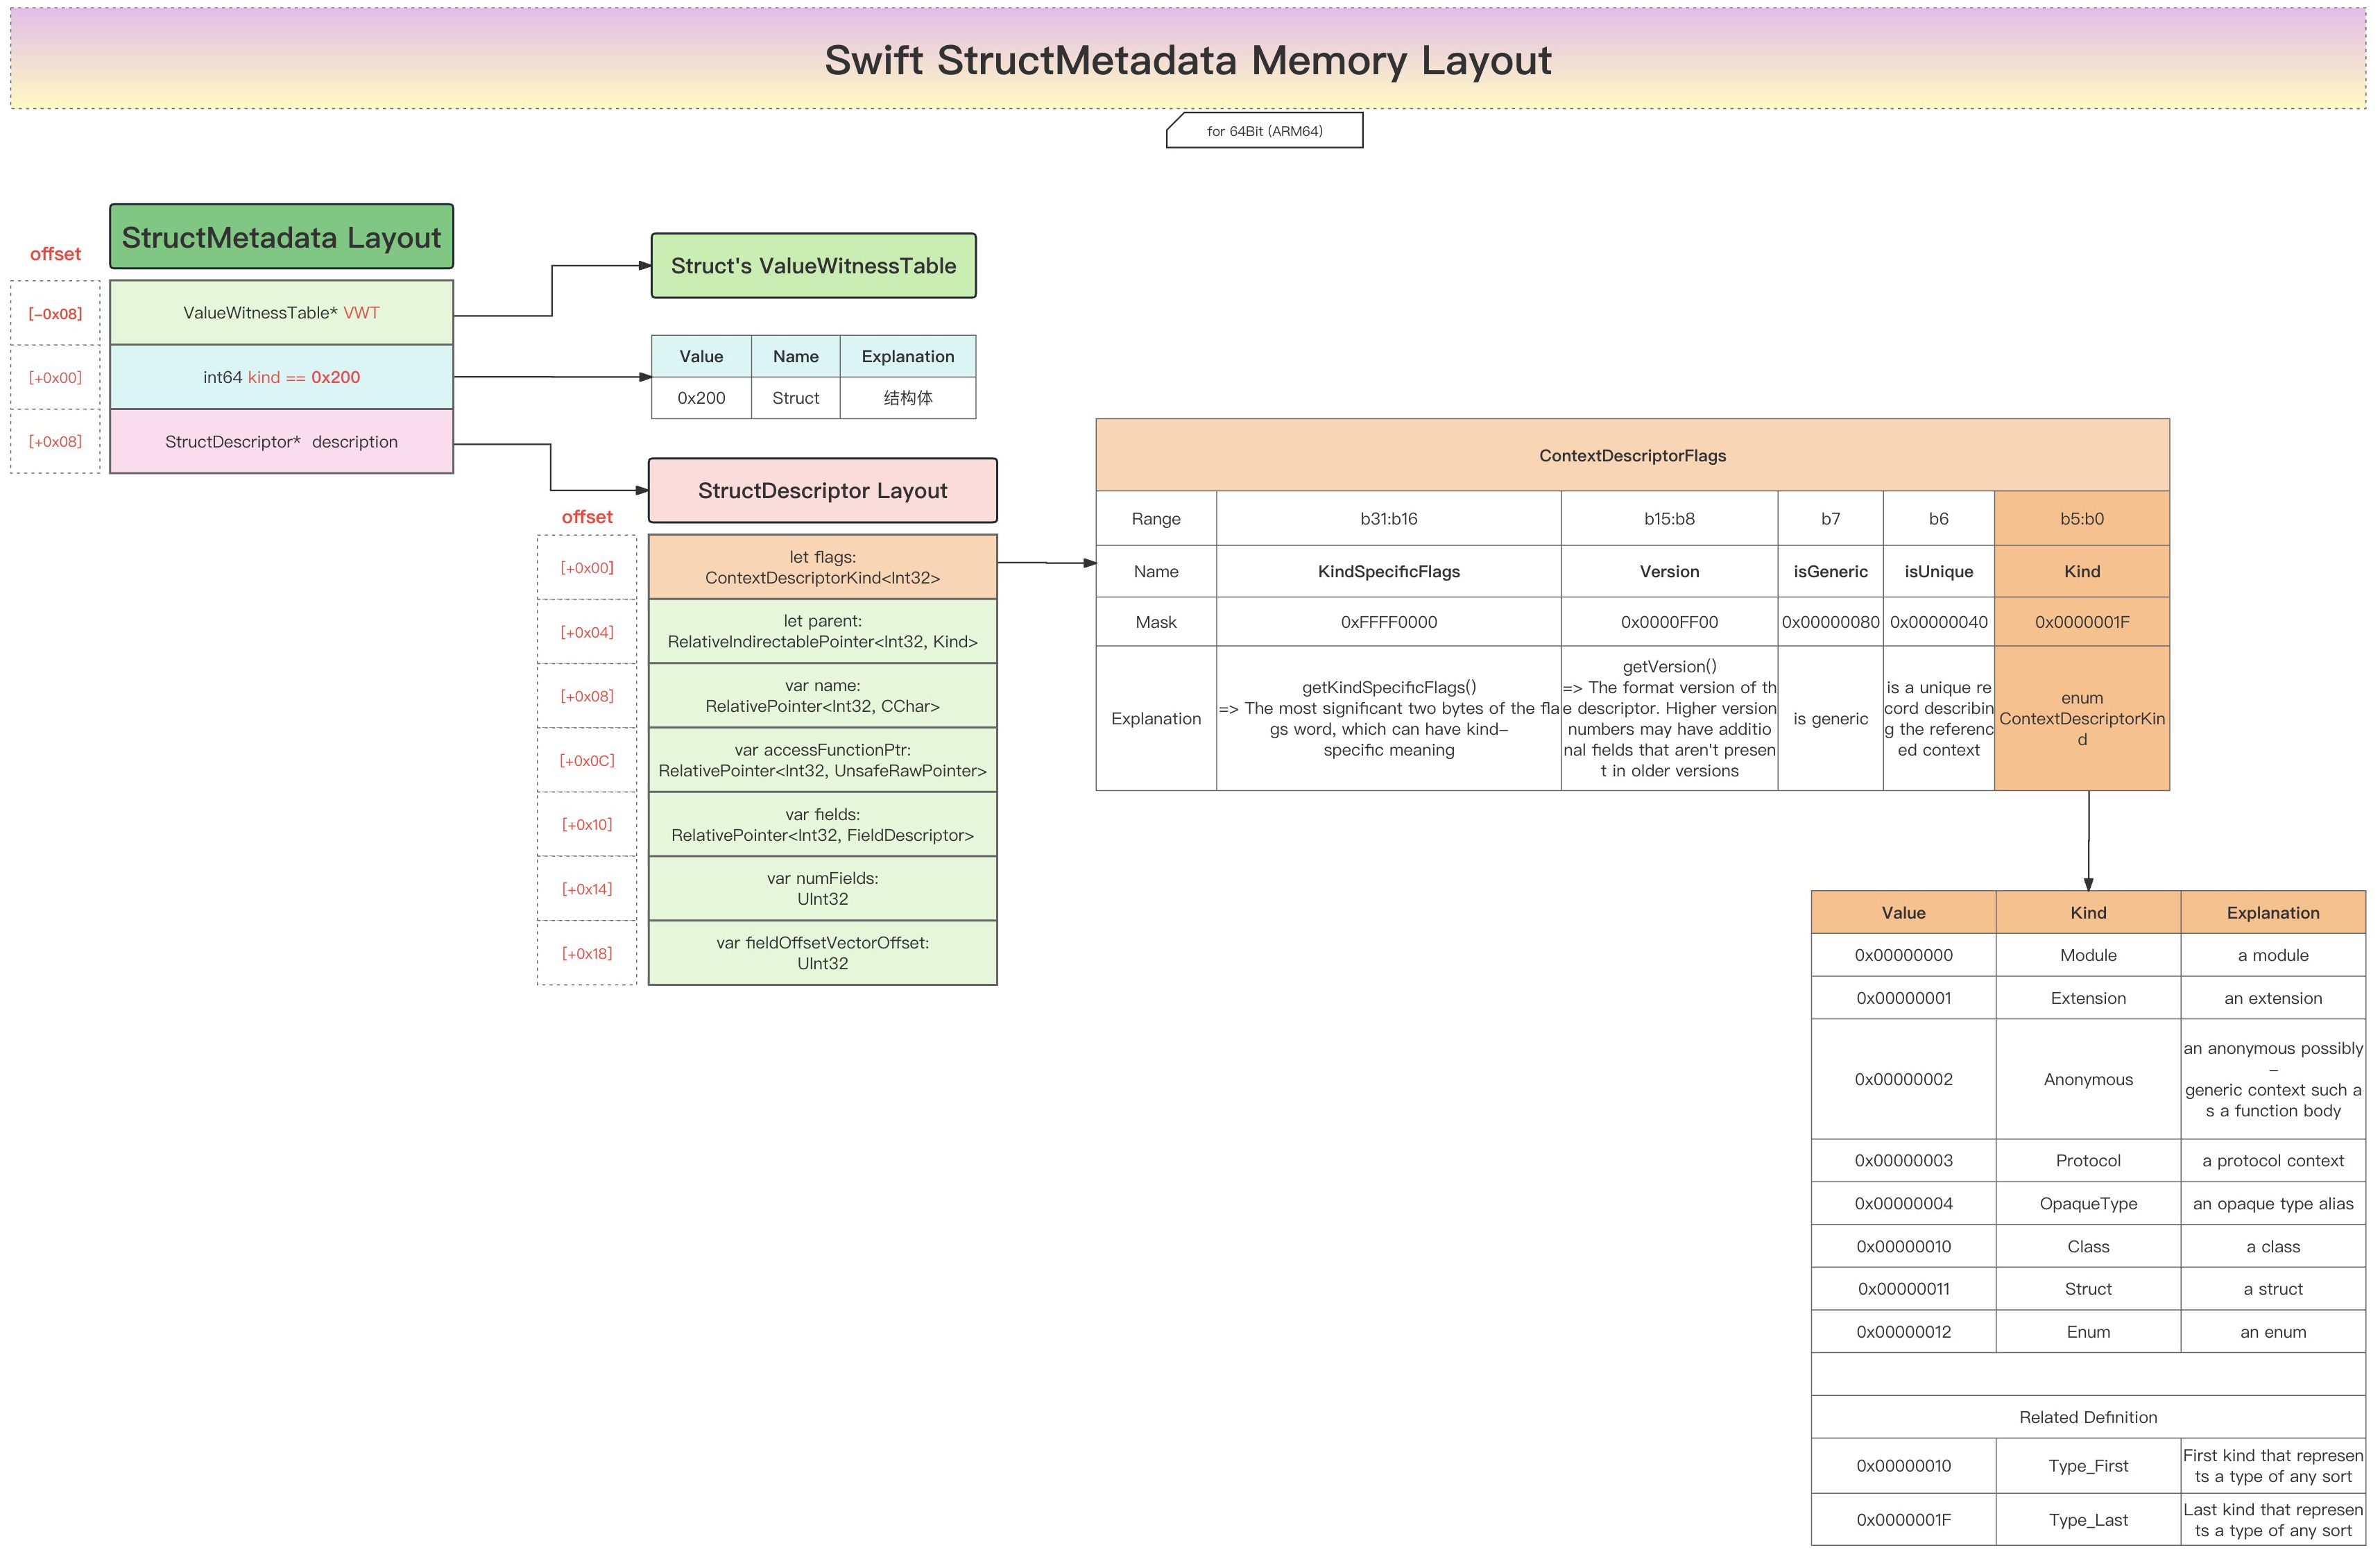 swift_structmetadata_memory_layout_core